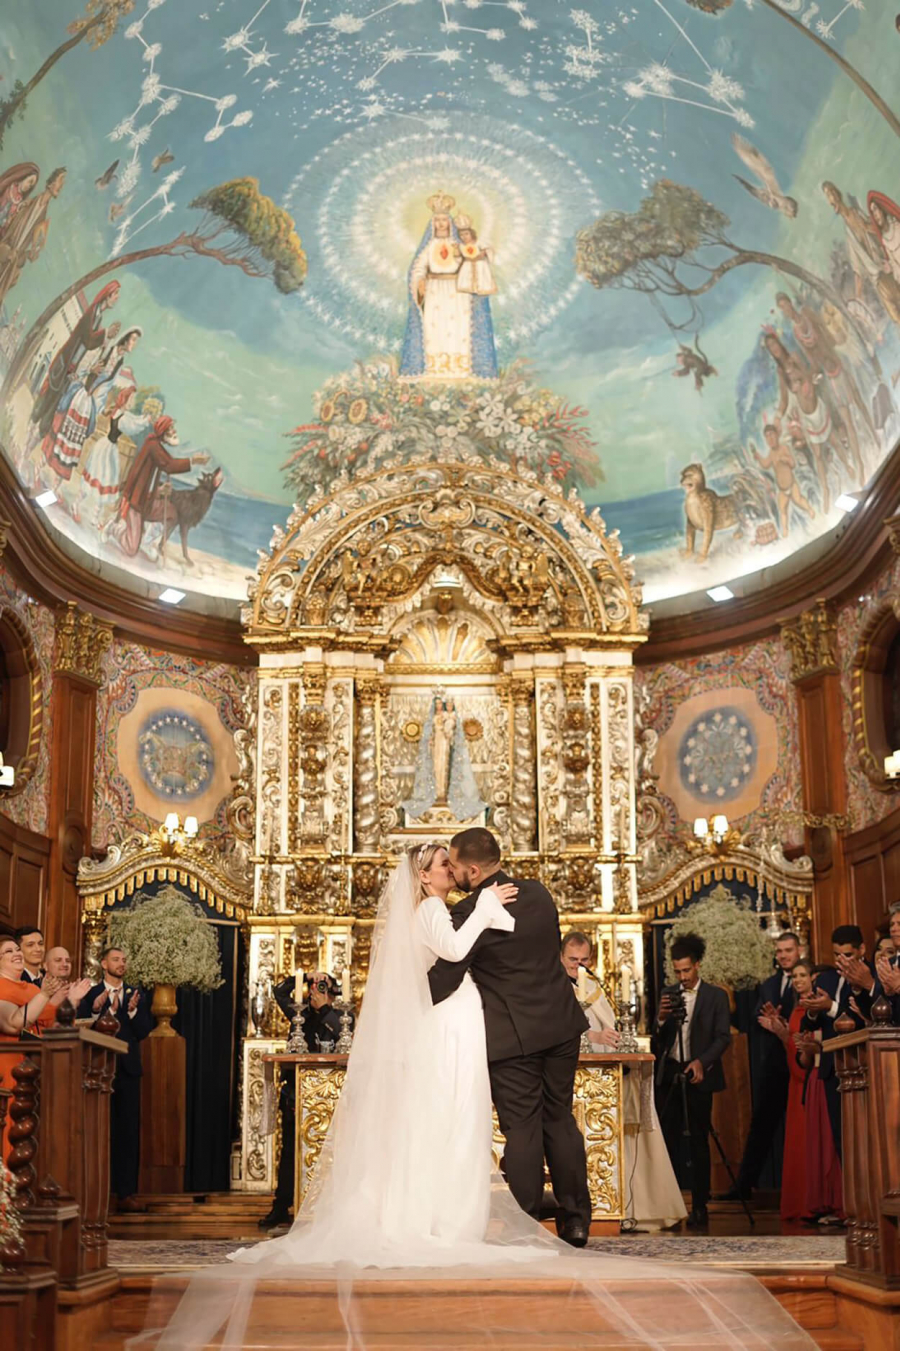  Casamento-na-igreja (31)